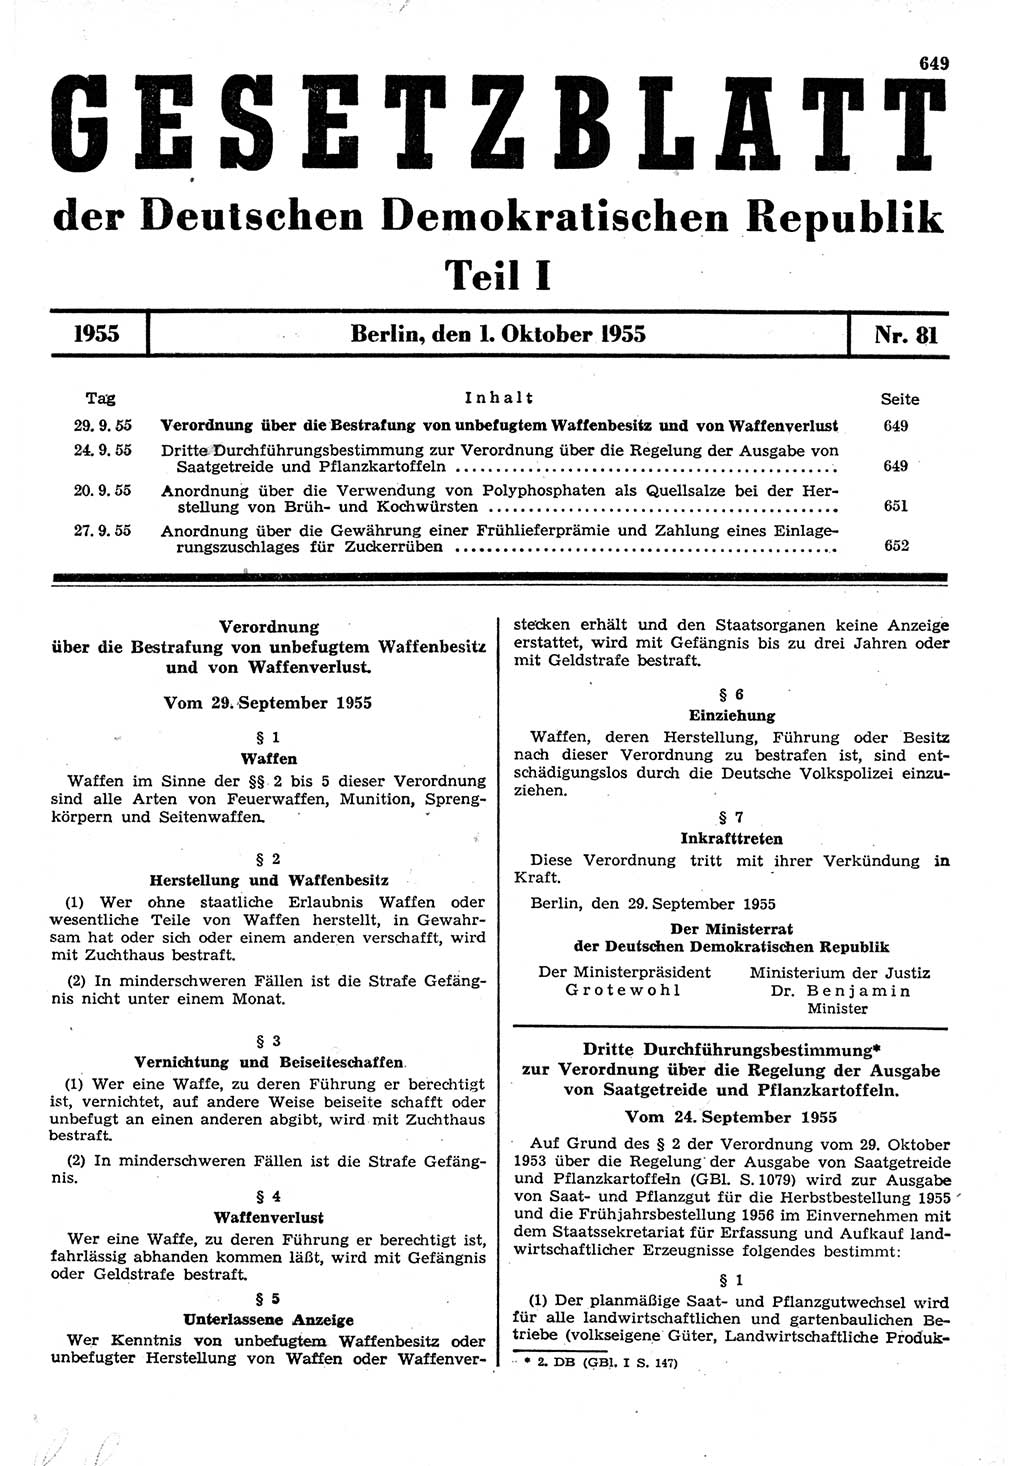 Gesetzblatt (GBl.) der Deutschen Demokratischen Republik (DDR) Teil Ⅰ 1955, Seite 649 (GBl. DDR Ⅰ 1955, S. 649)